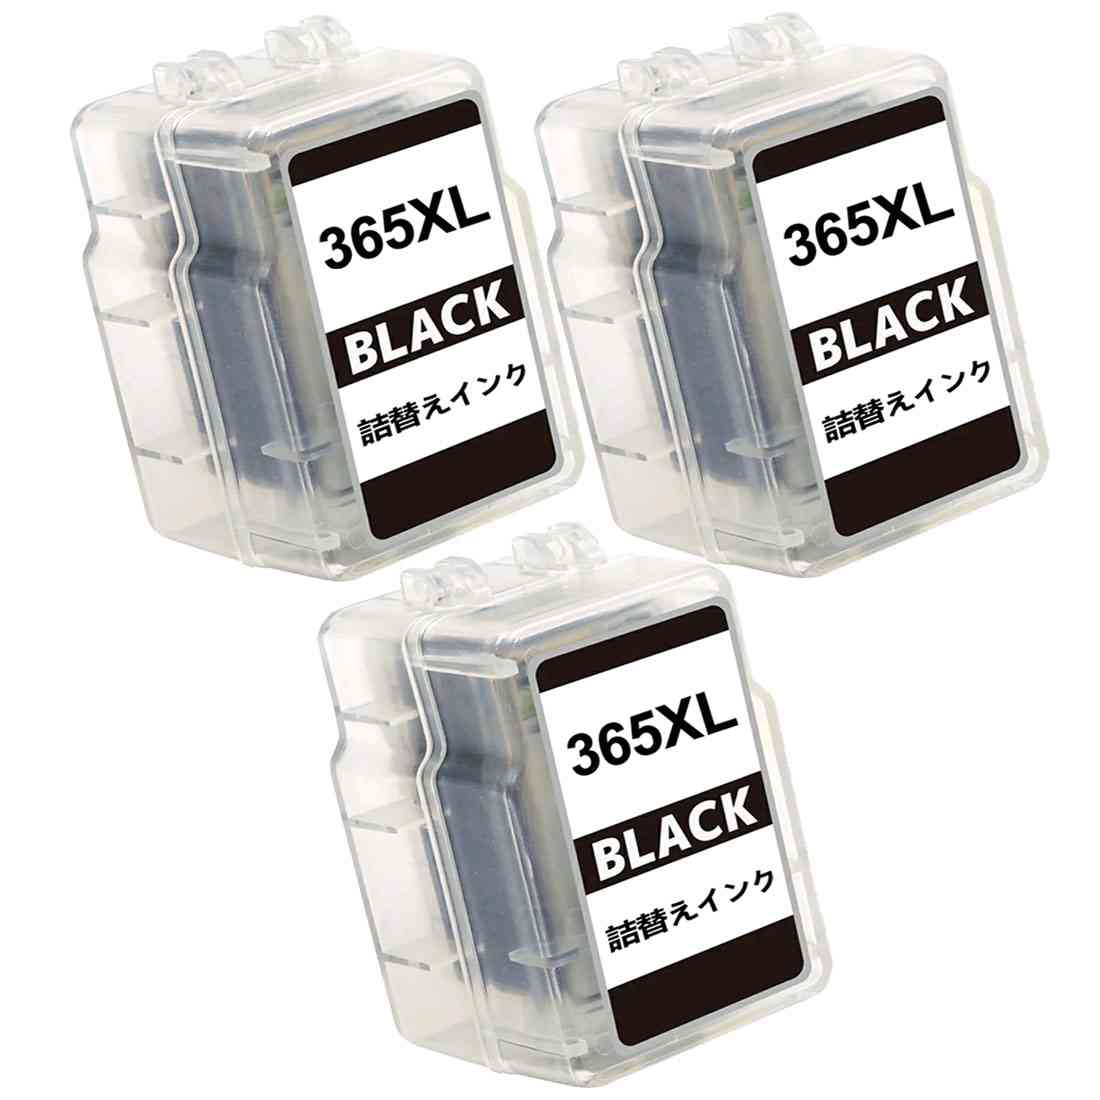 BC-365XL (BKブラック)3本セット キヤノン 用詰め替え互換インクカートリッジ365 インク BC-365XL 大容量 補充用 対応機種: PIXUS TS3530 本商品単独では動作しません。使用済みの純正インクカートリッジをご用意ください